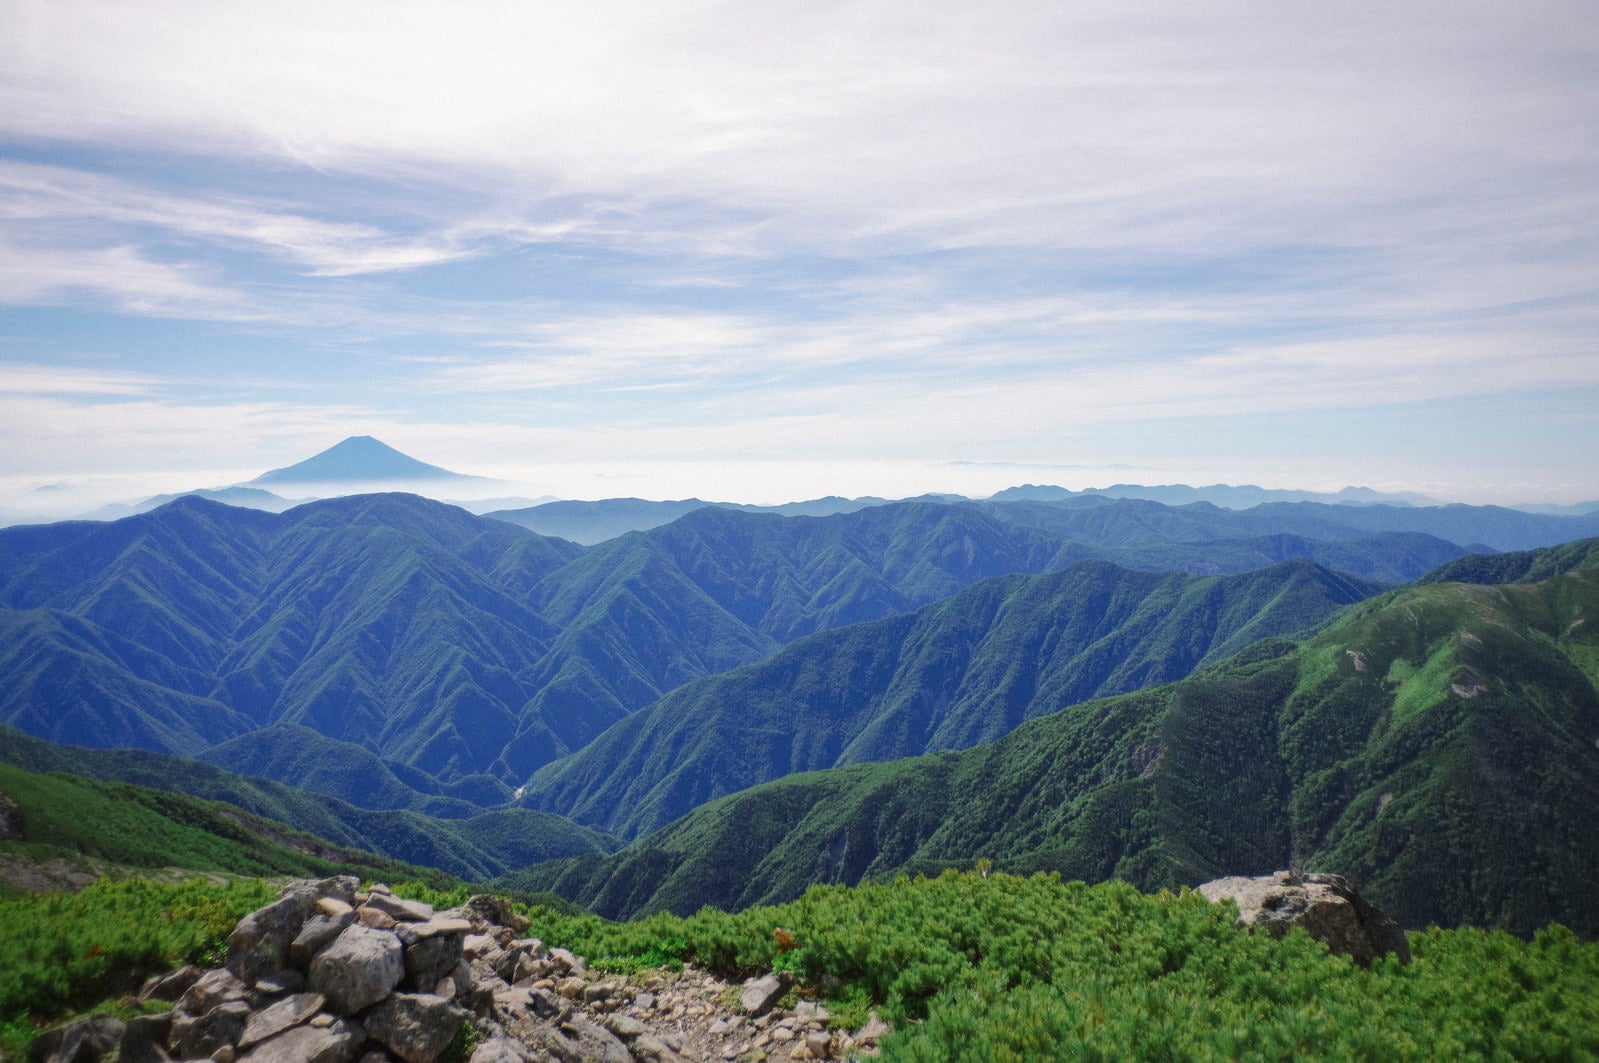 「聖岳山頂から見る南ア南部の山々の景色」の写真